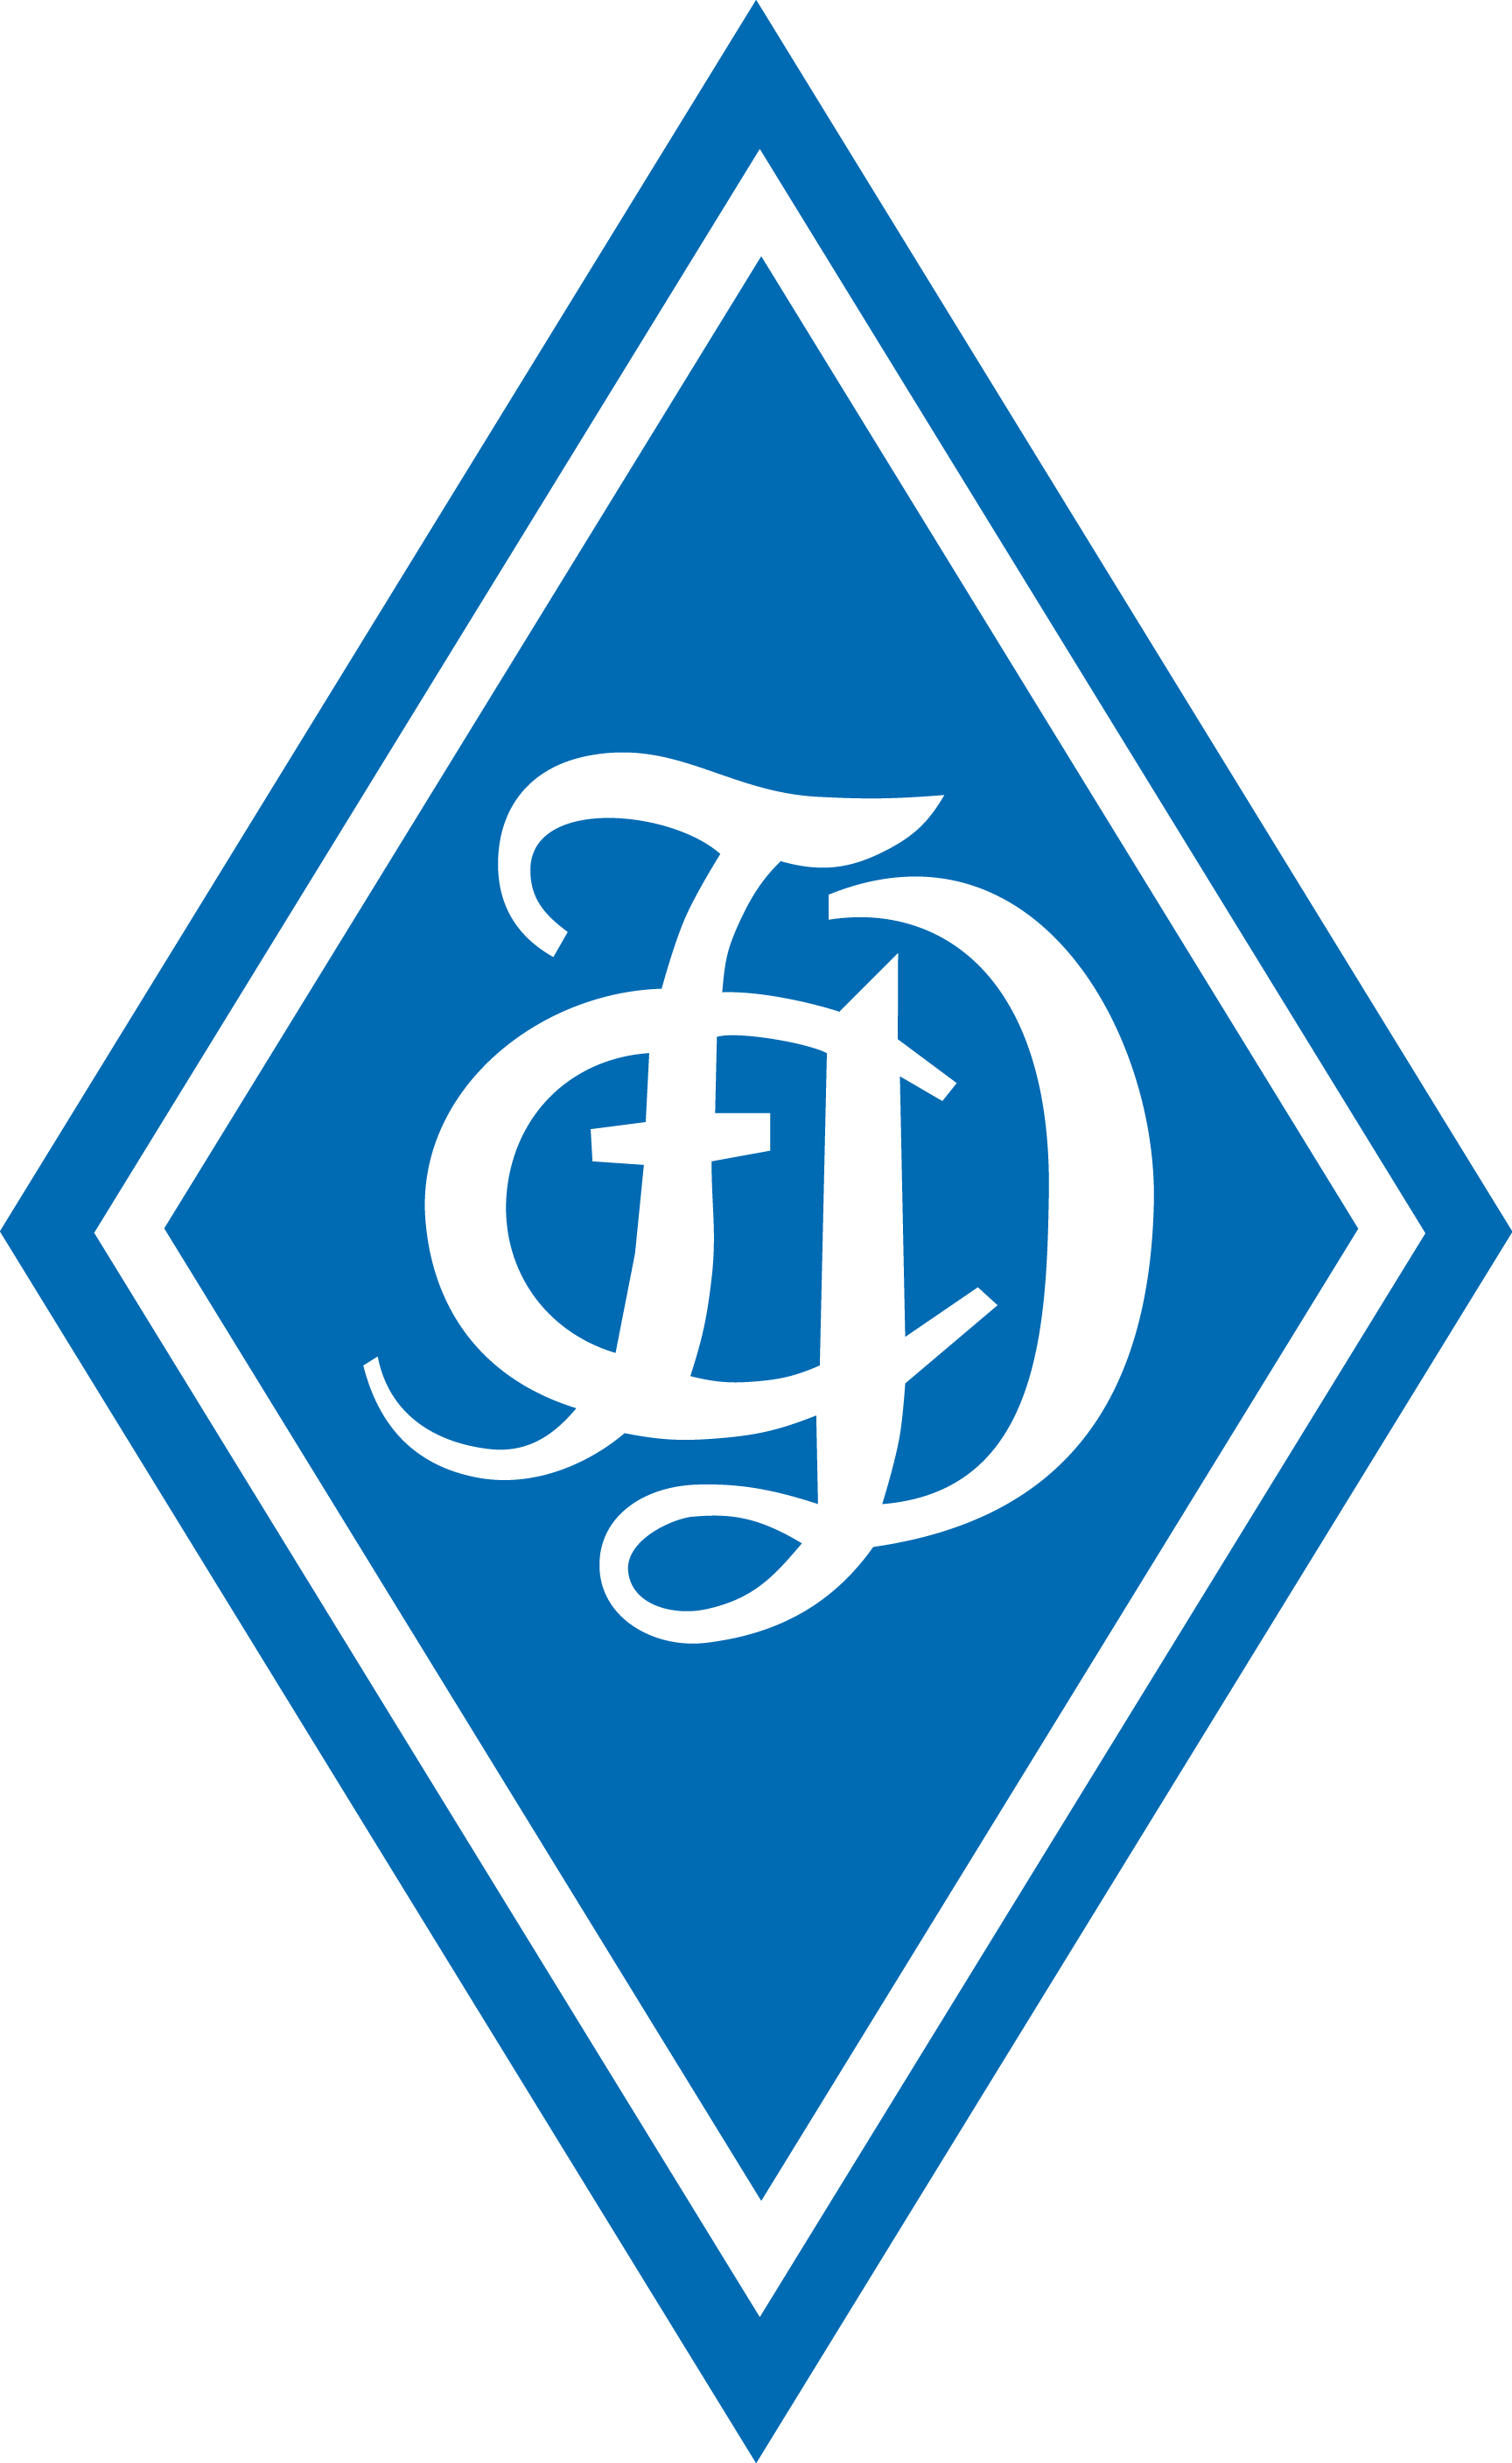 logo Дайсенхофен